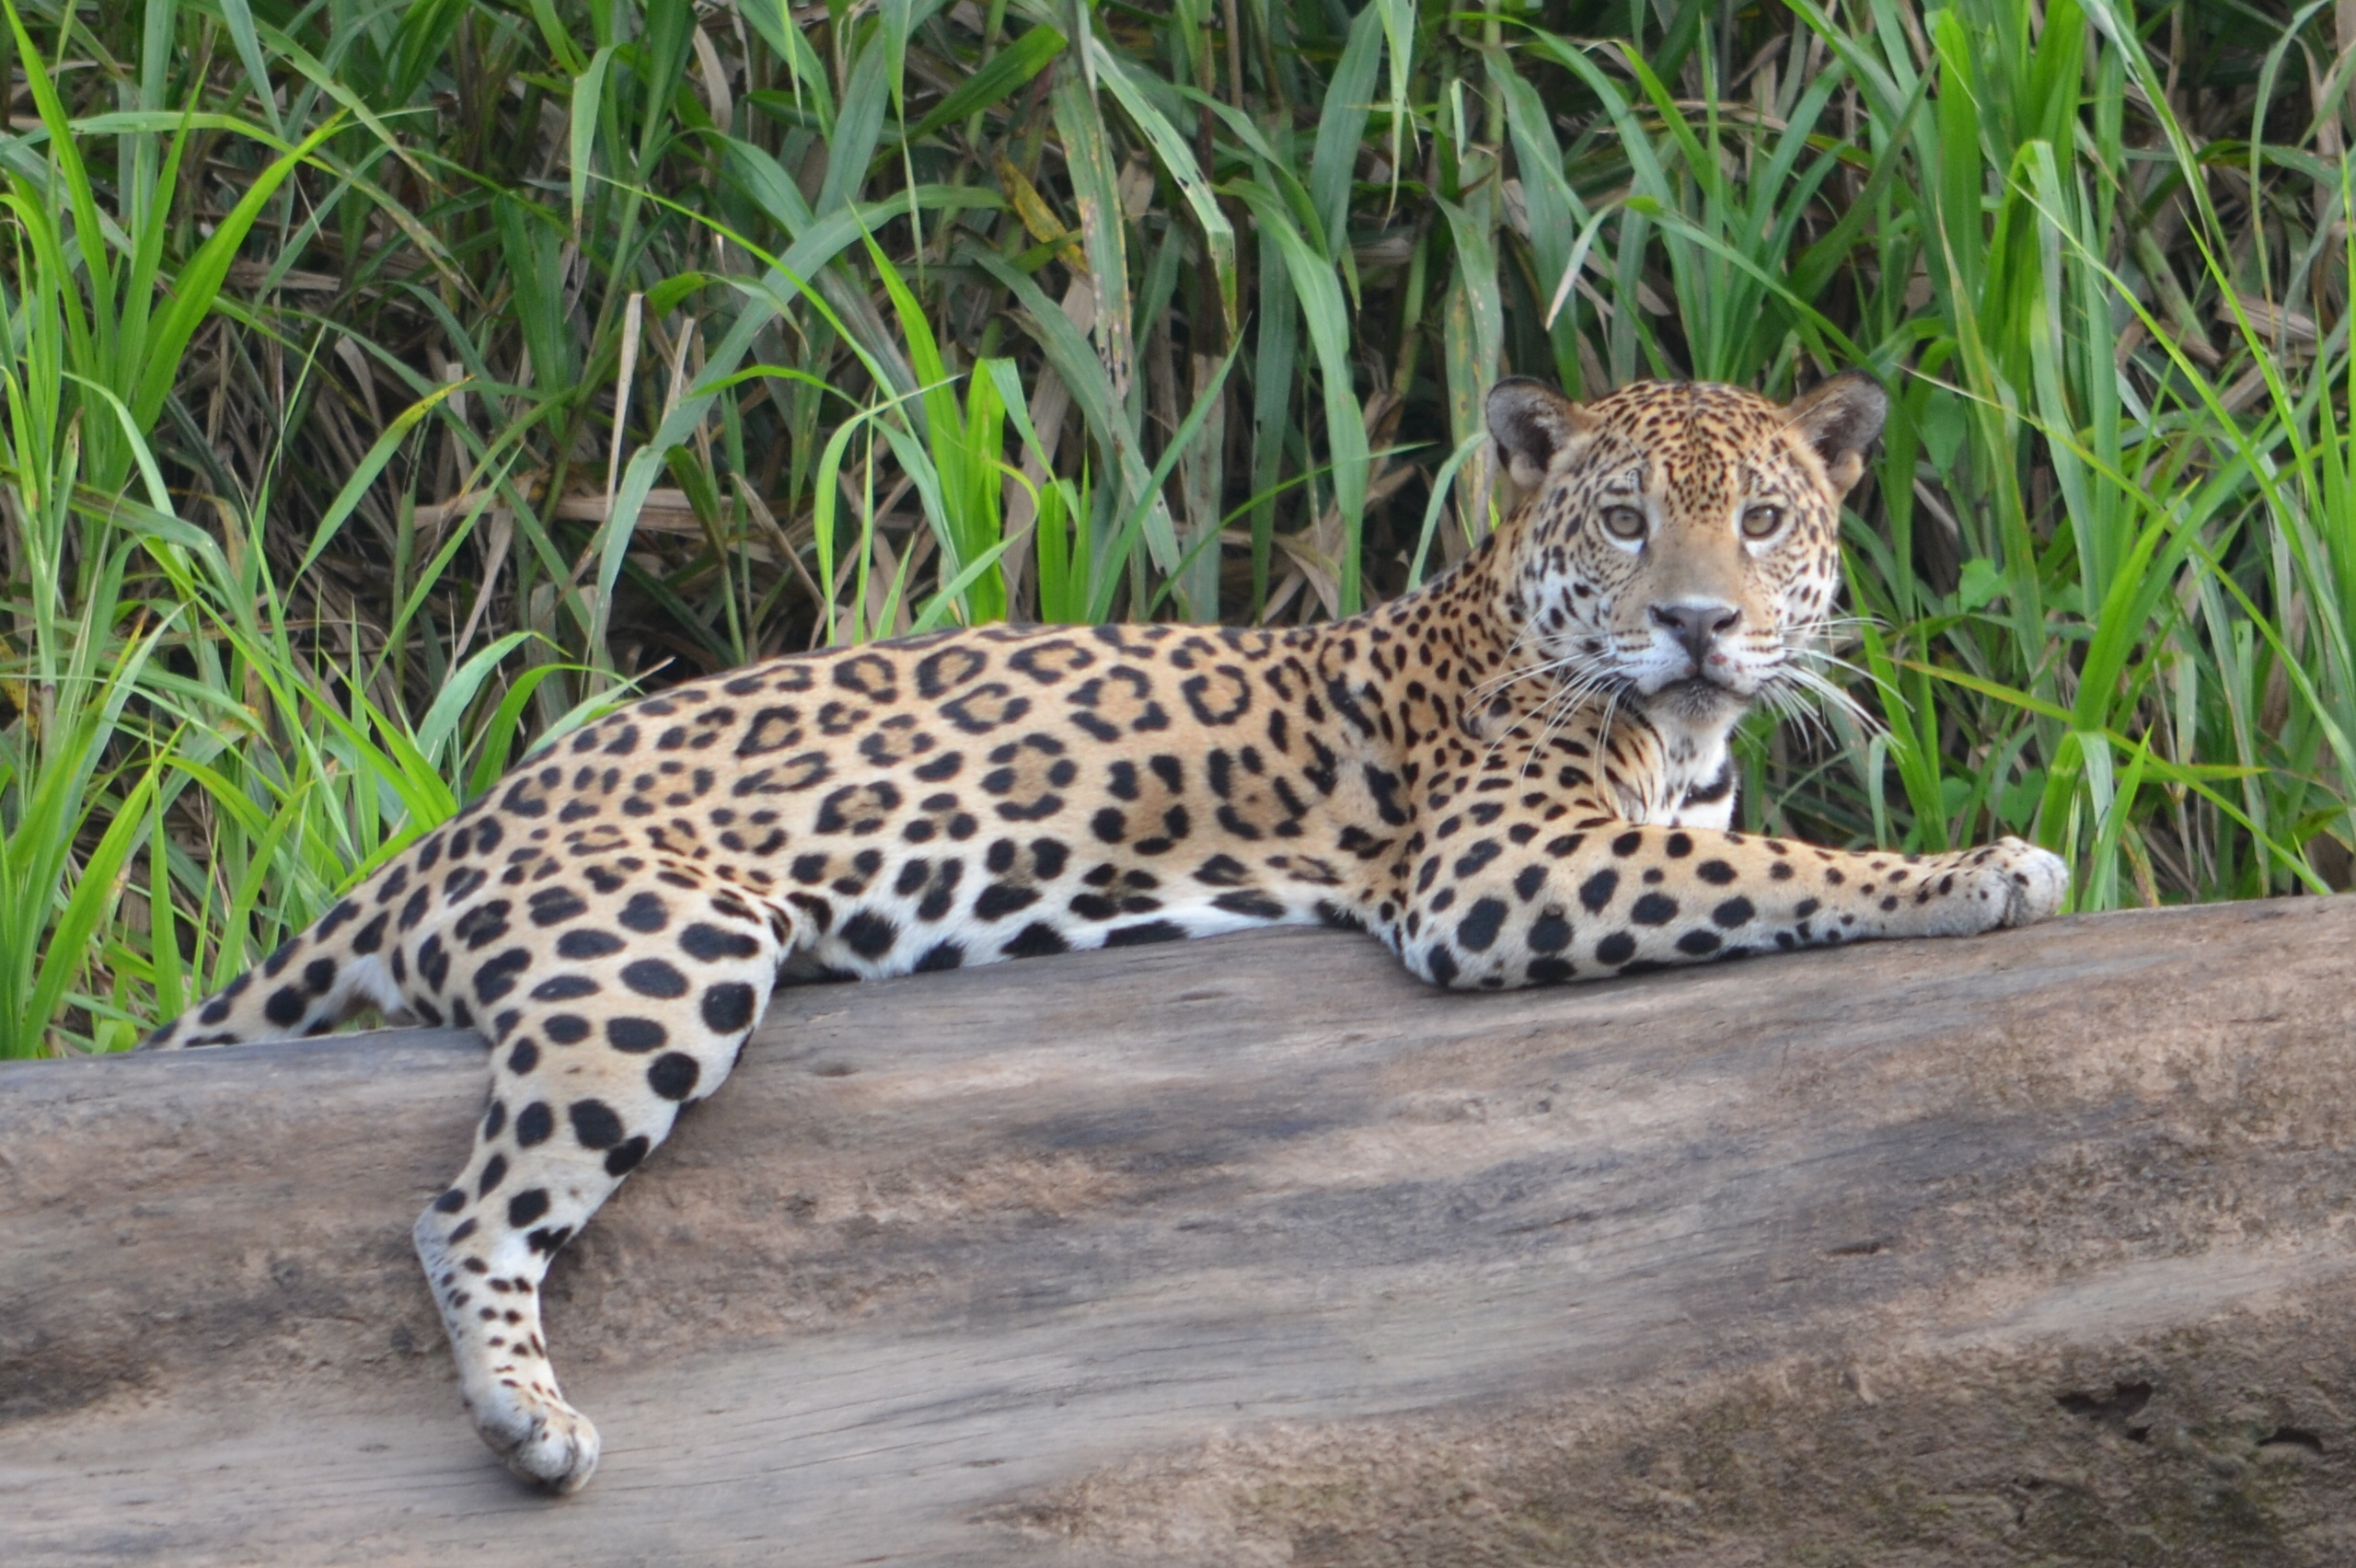 Can you spot the Peruvian Jaguar?